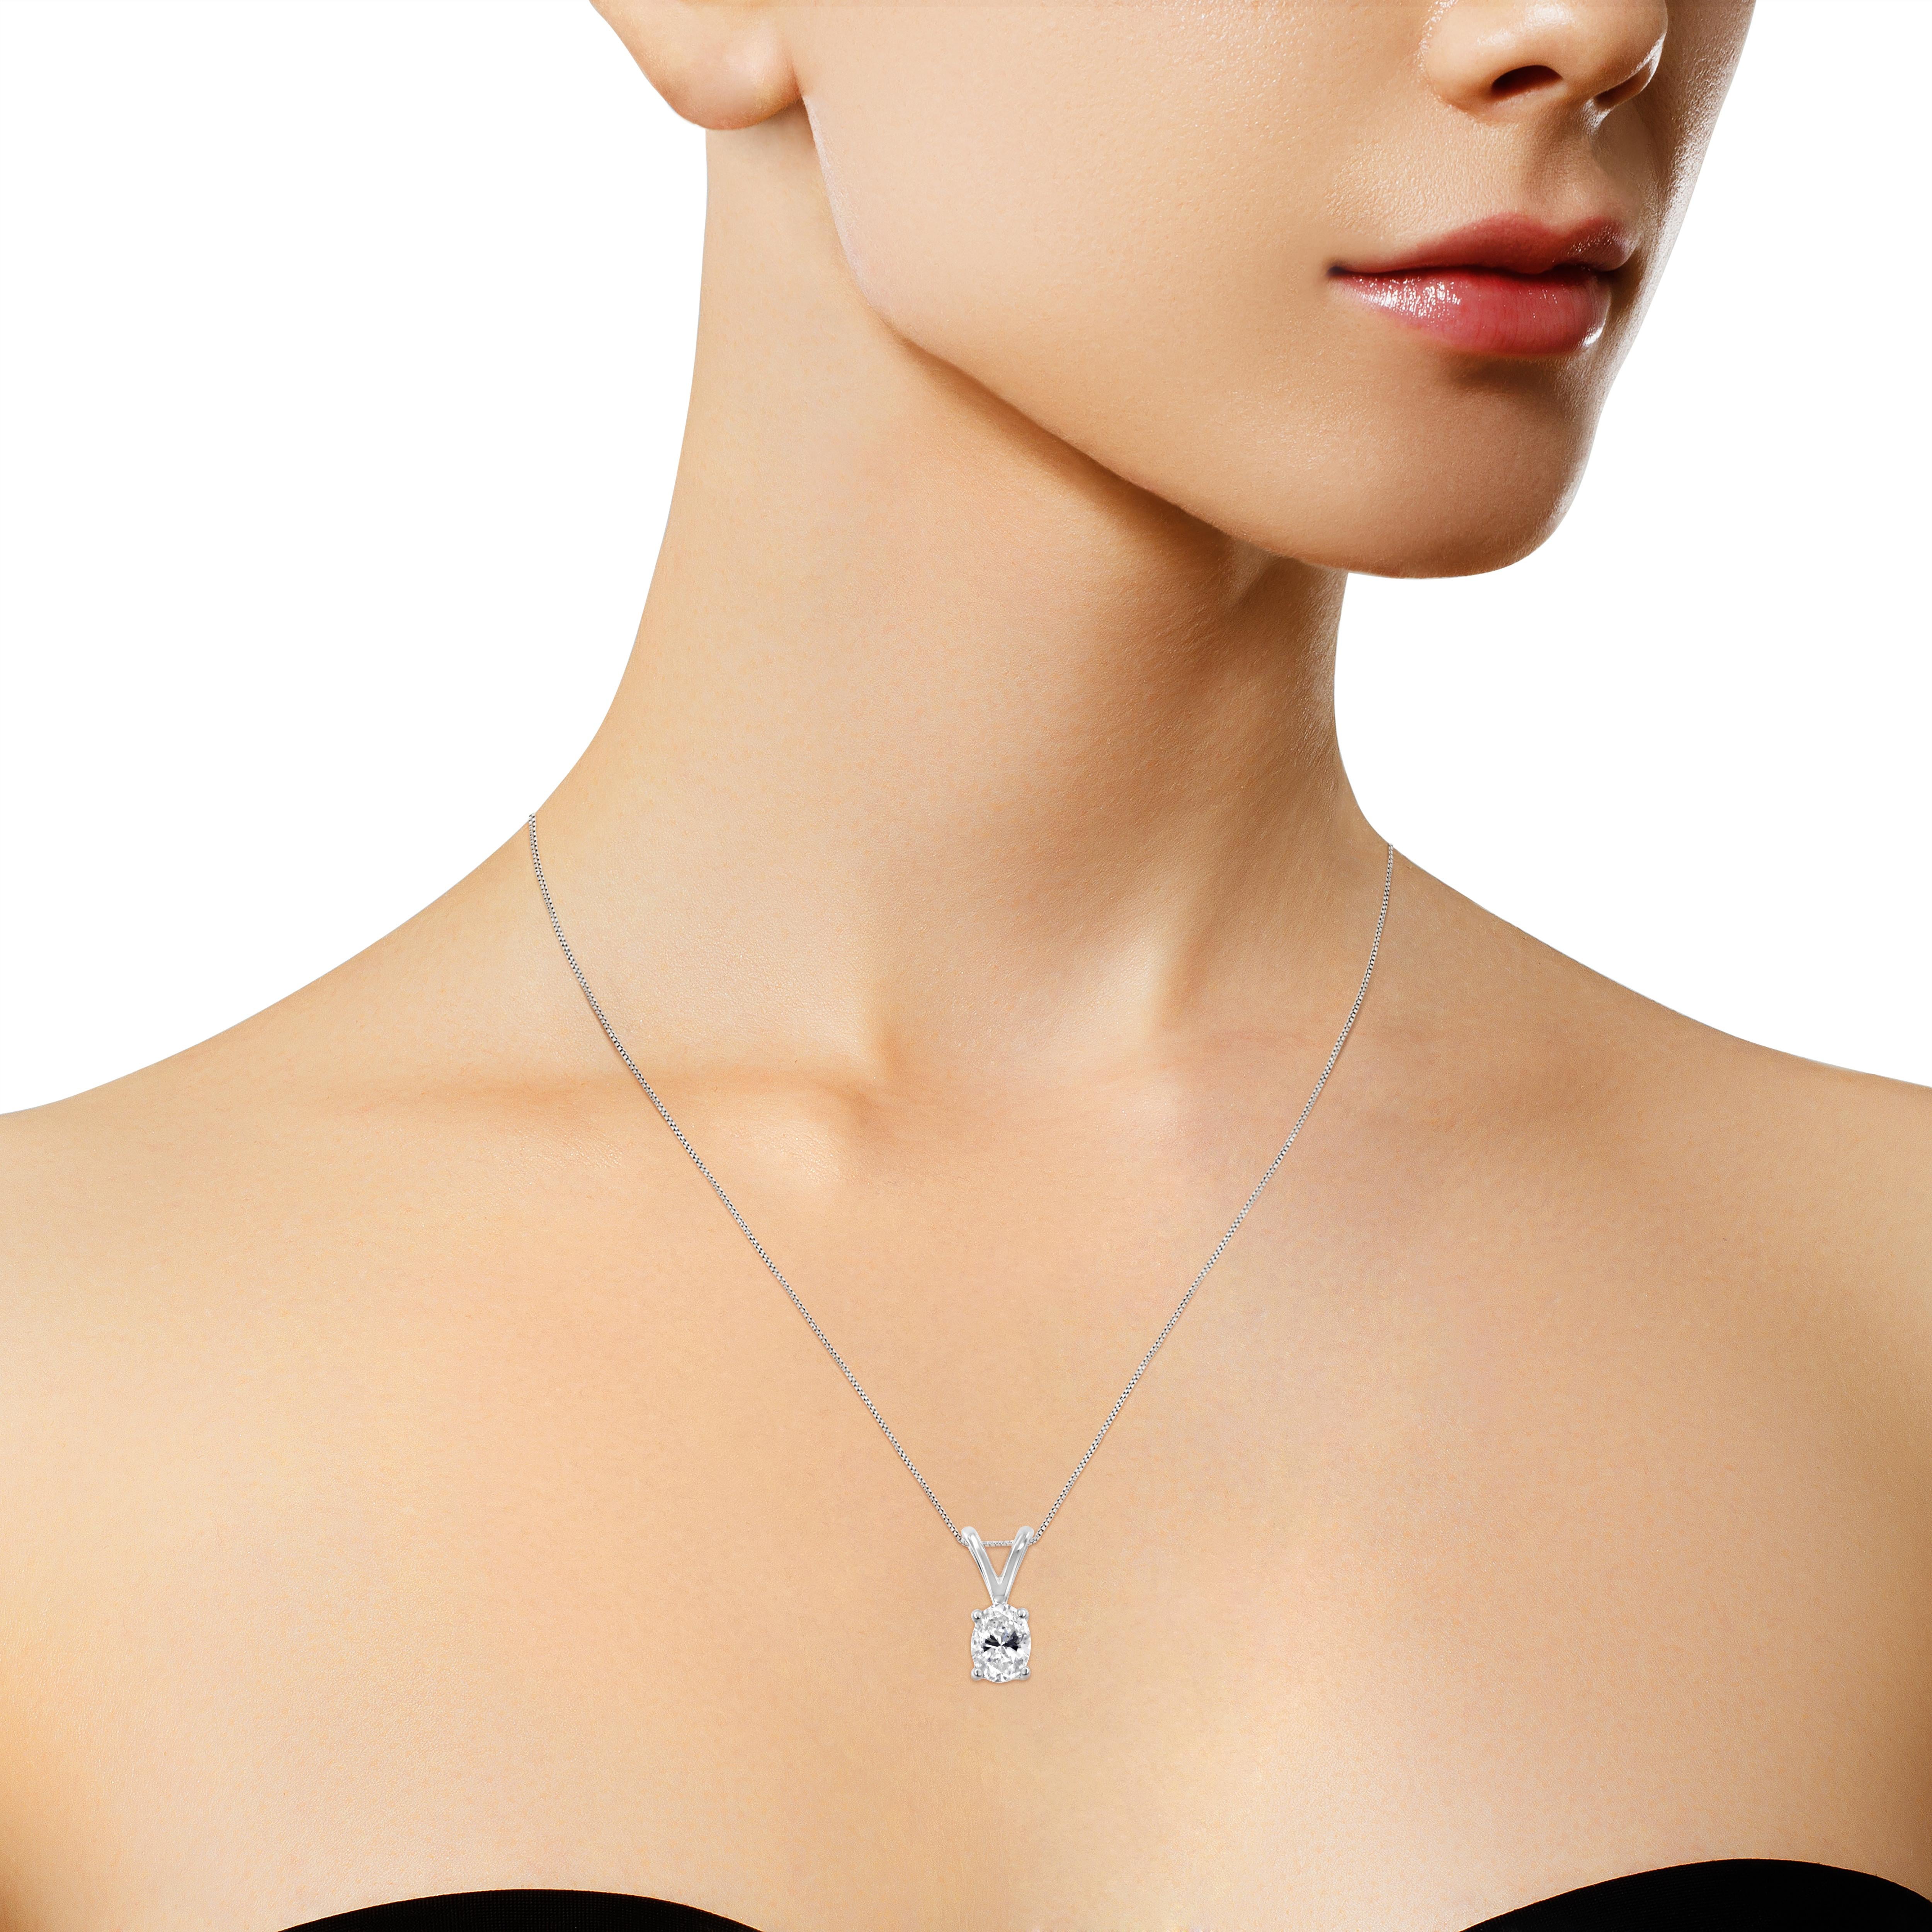 oval diamond necklace design